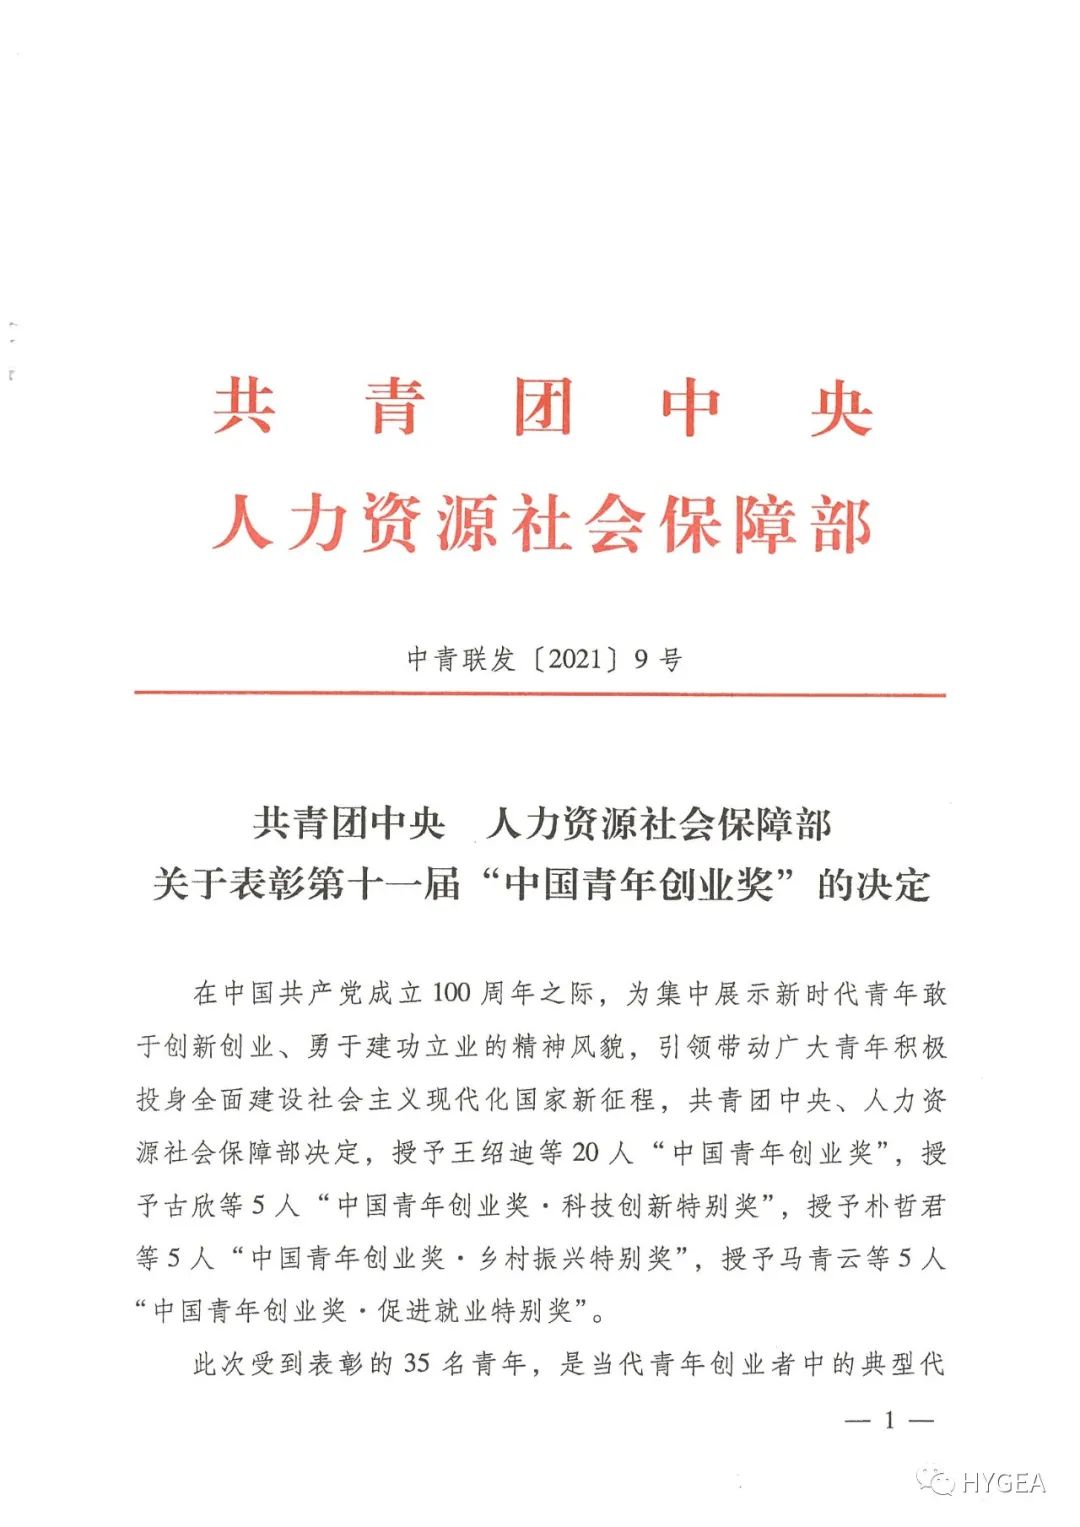 【喜报】海杰亚董事长黄乾富荣获第十一届“中国青年创业奖”